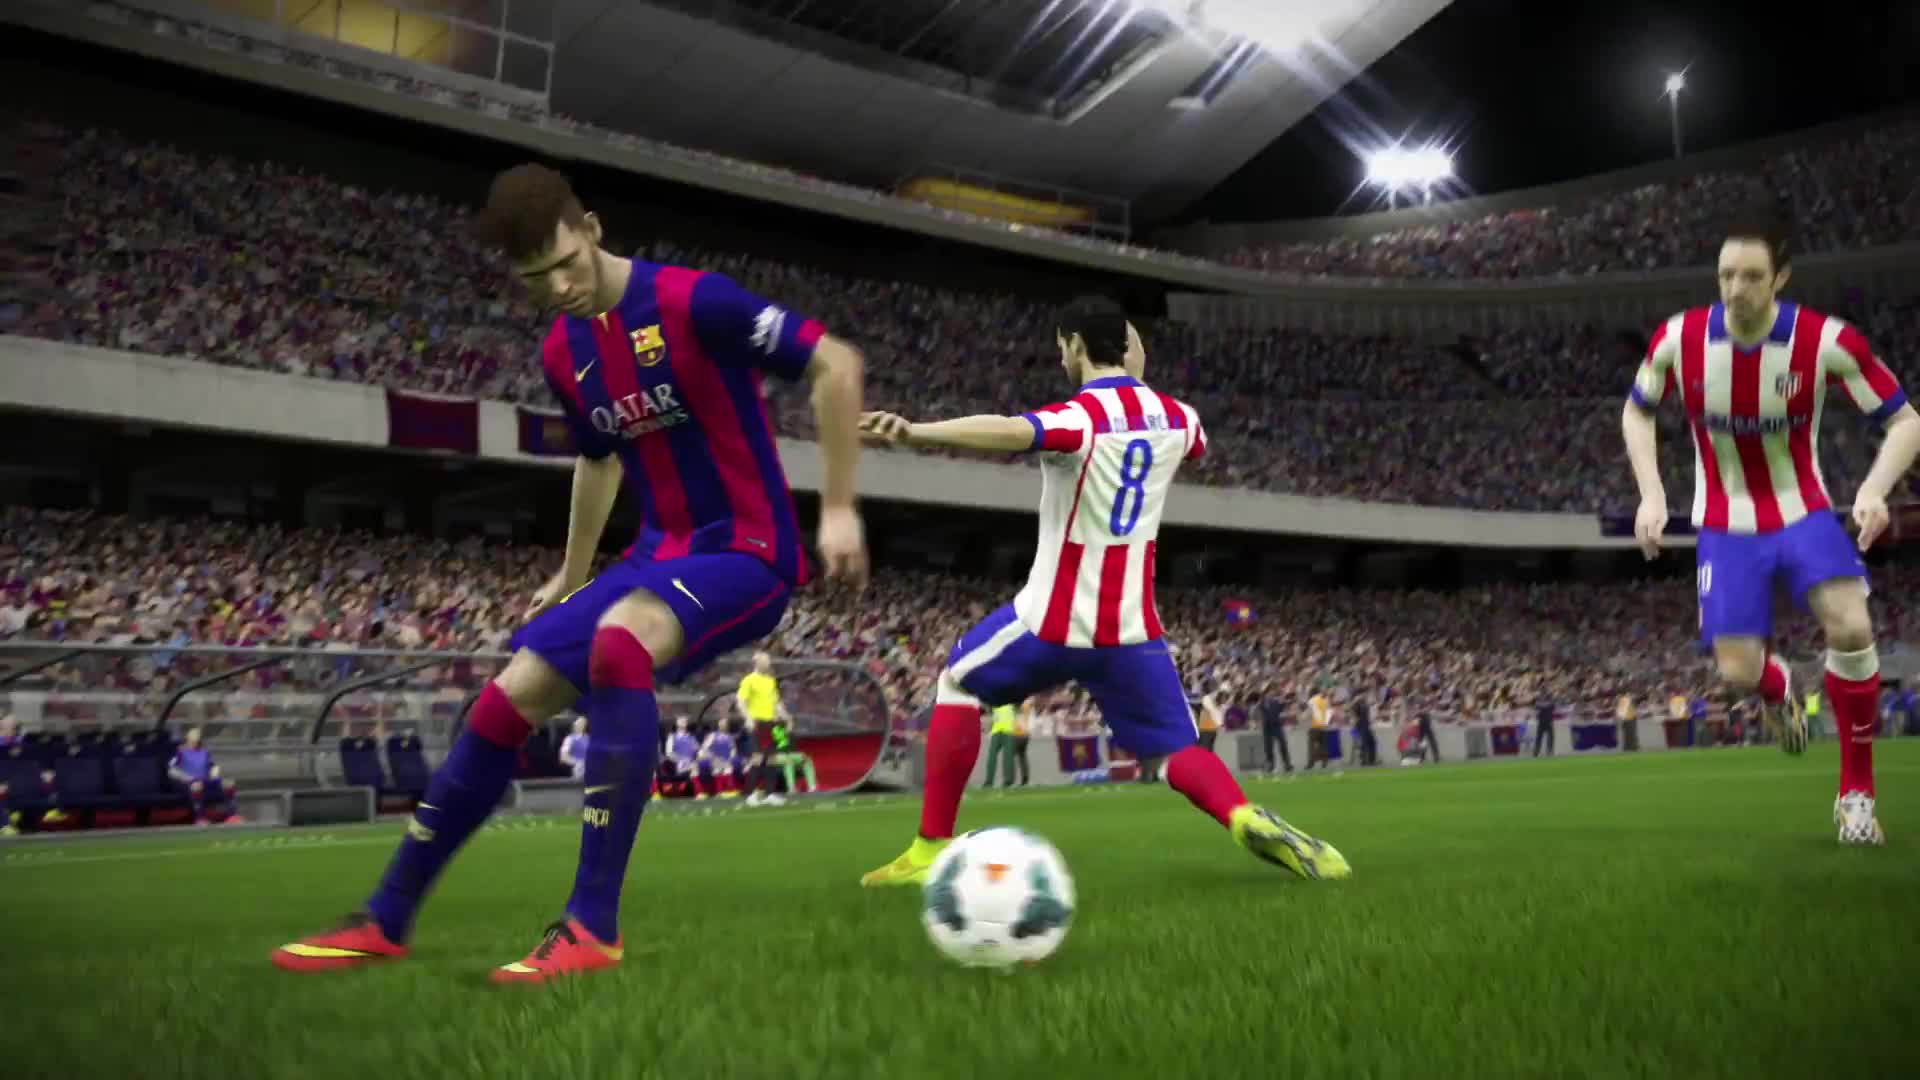 FIFA 15 - Agility and Control